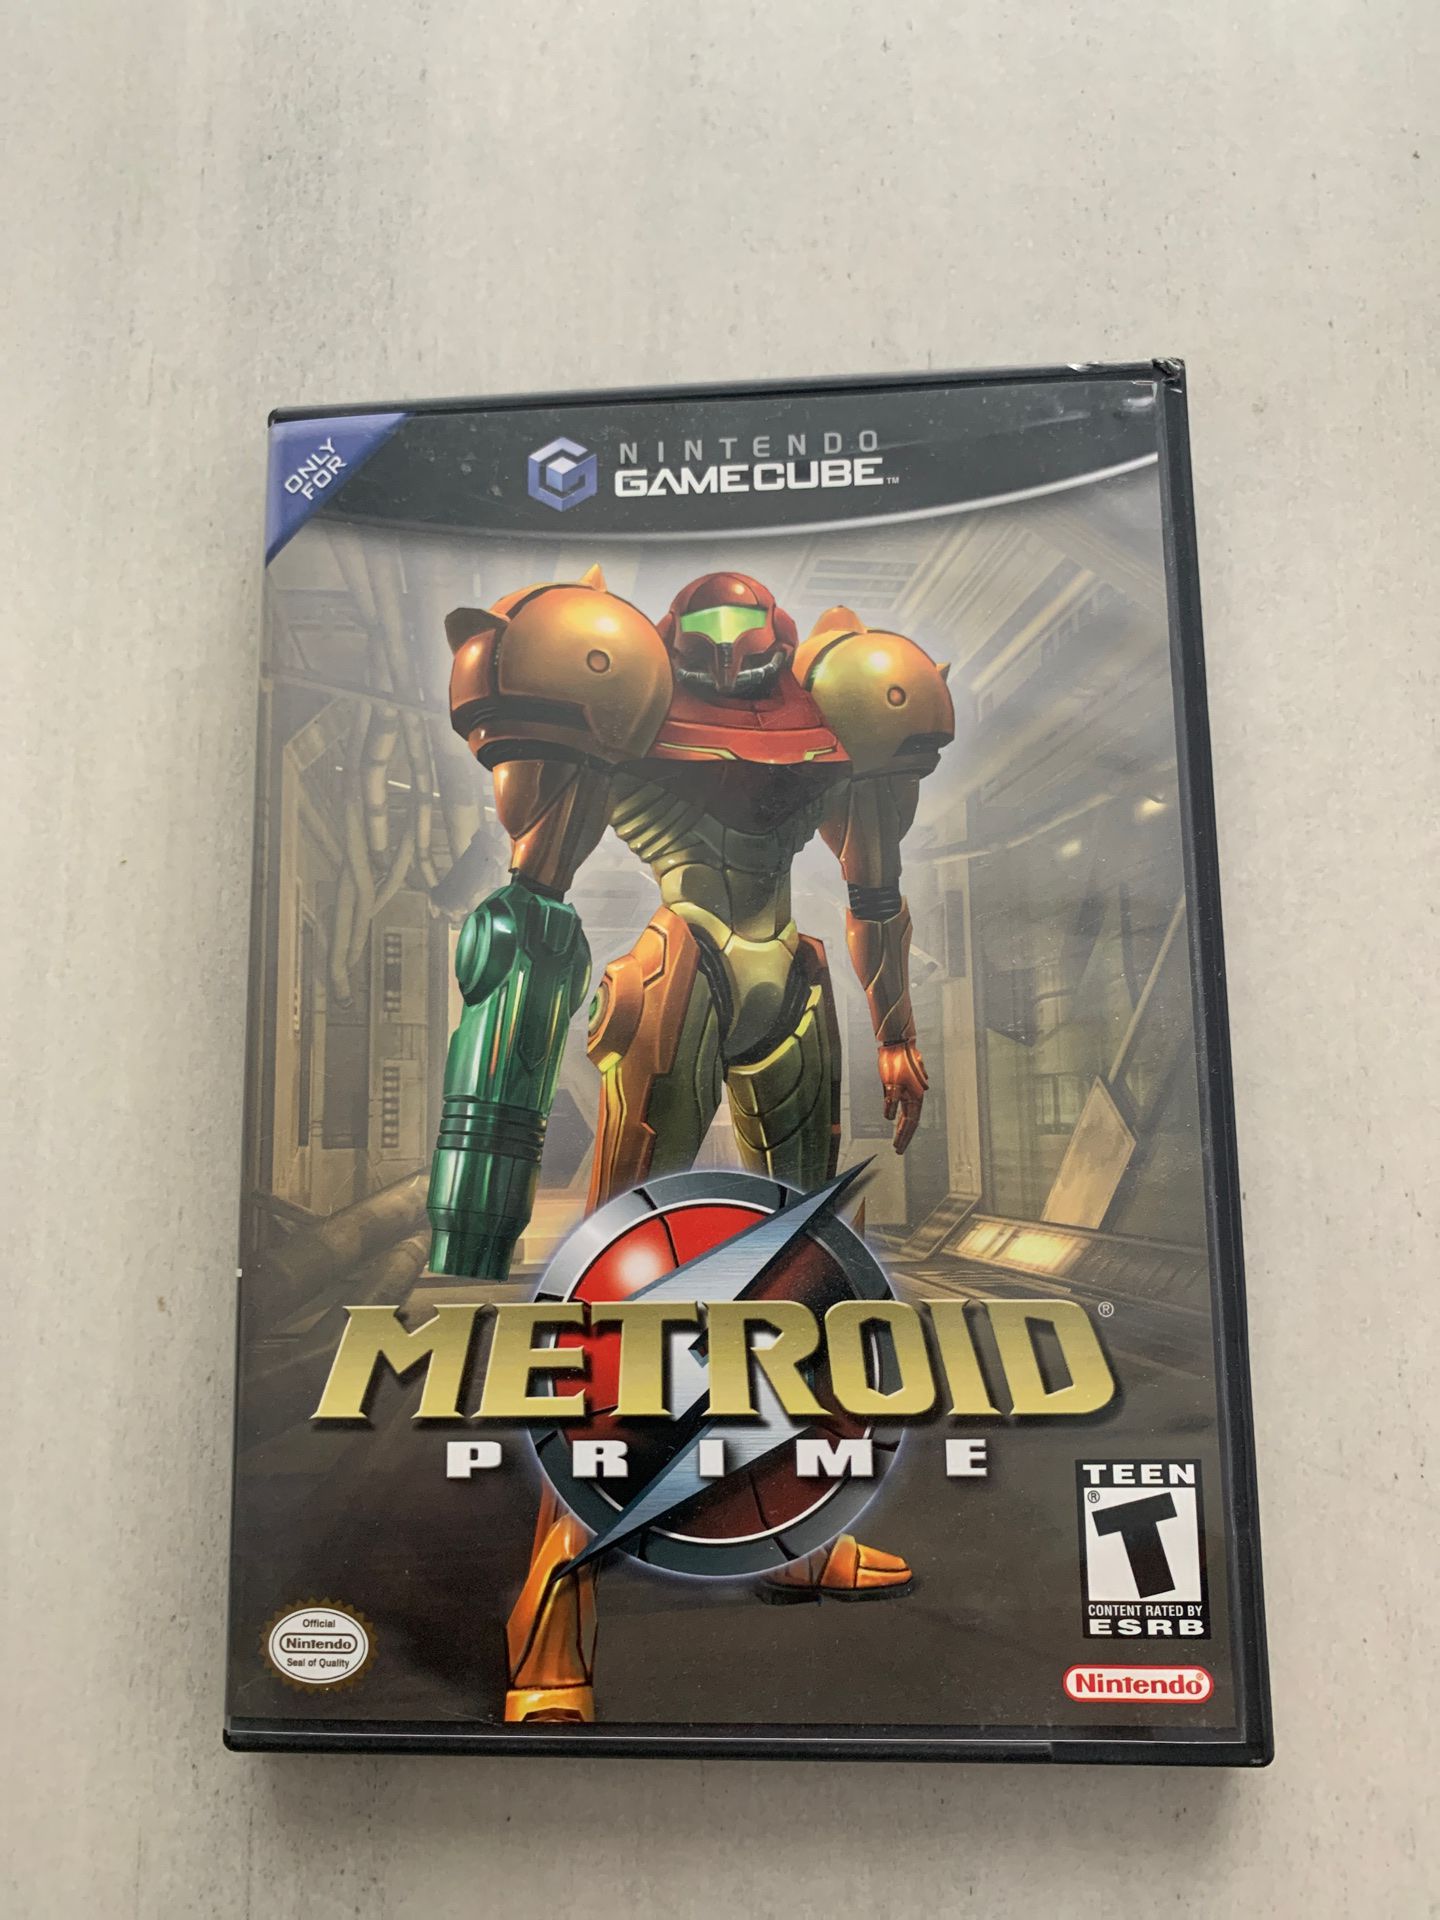 Metroid prime for GameCube